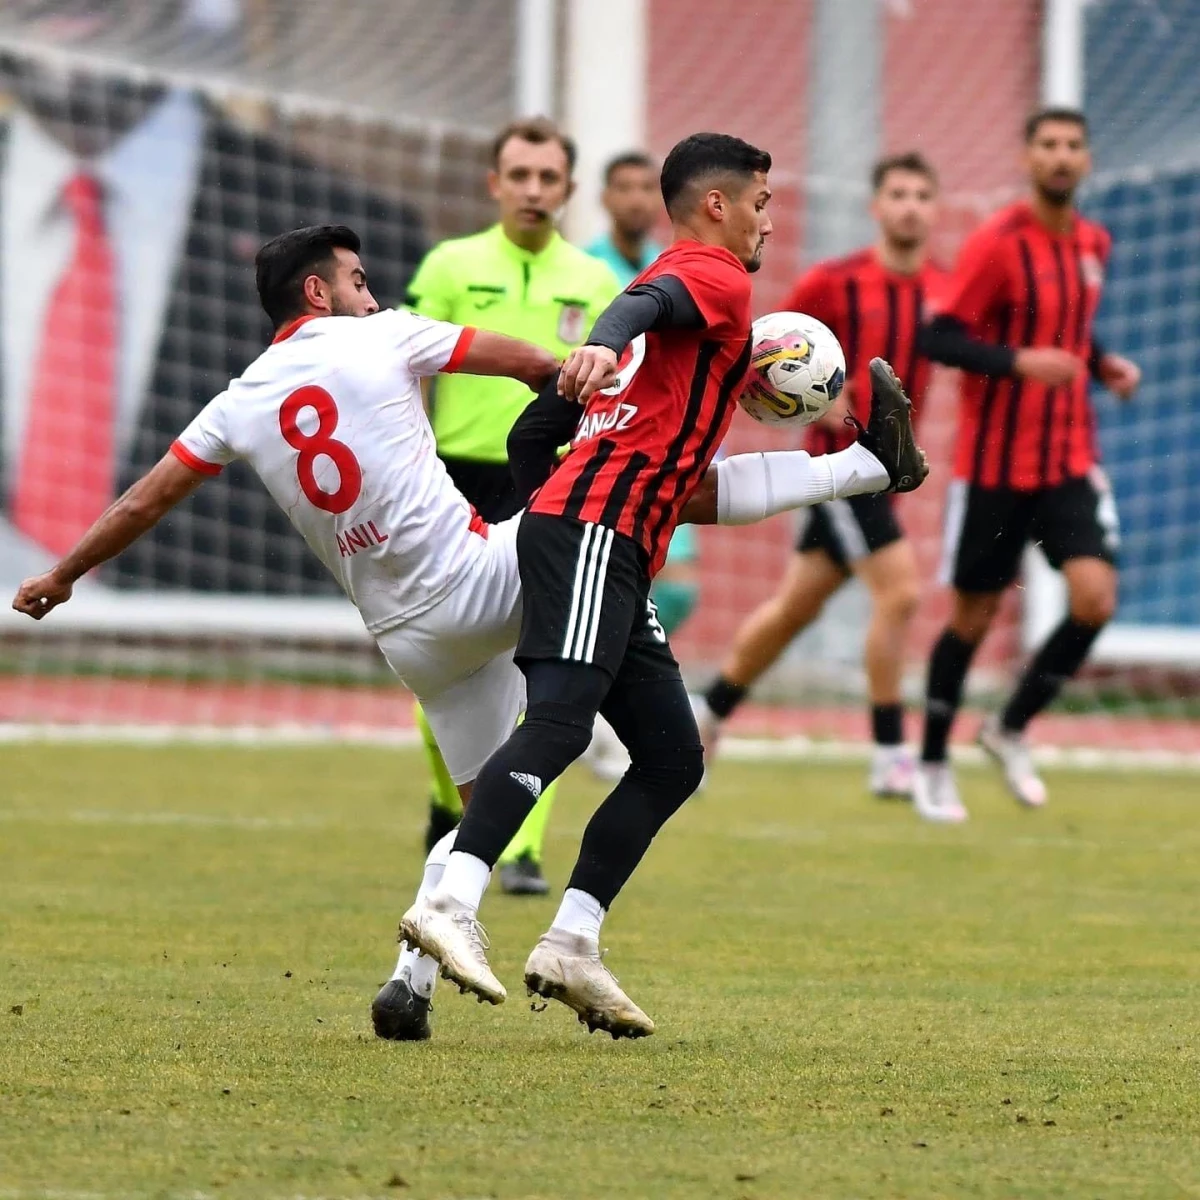 TFF 3. Lig: Gümüşhane Sportif Faaliyetler A.Ş: 3 Turgutluspor: 0